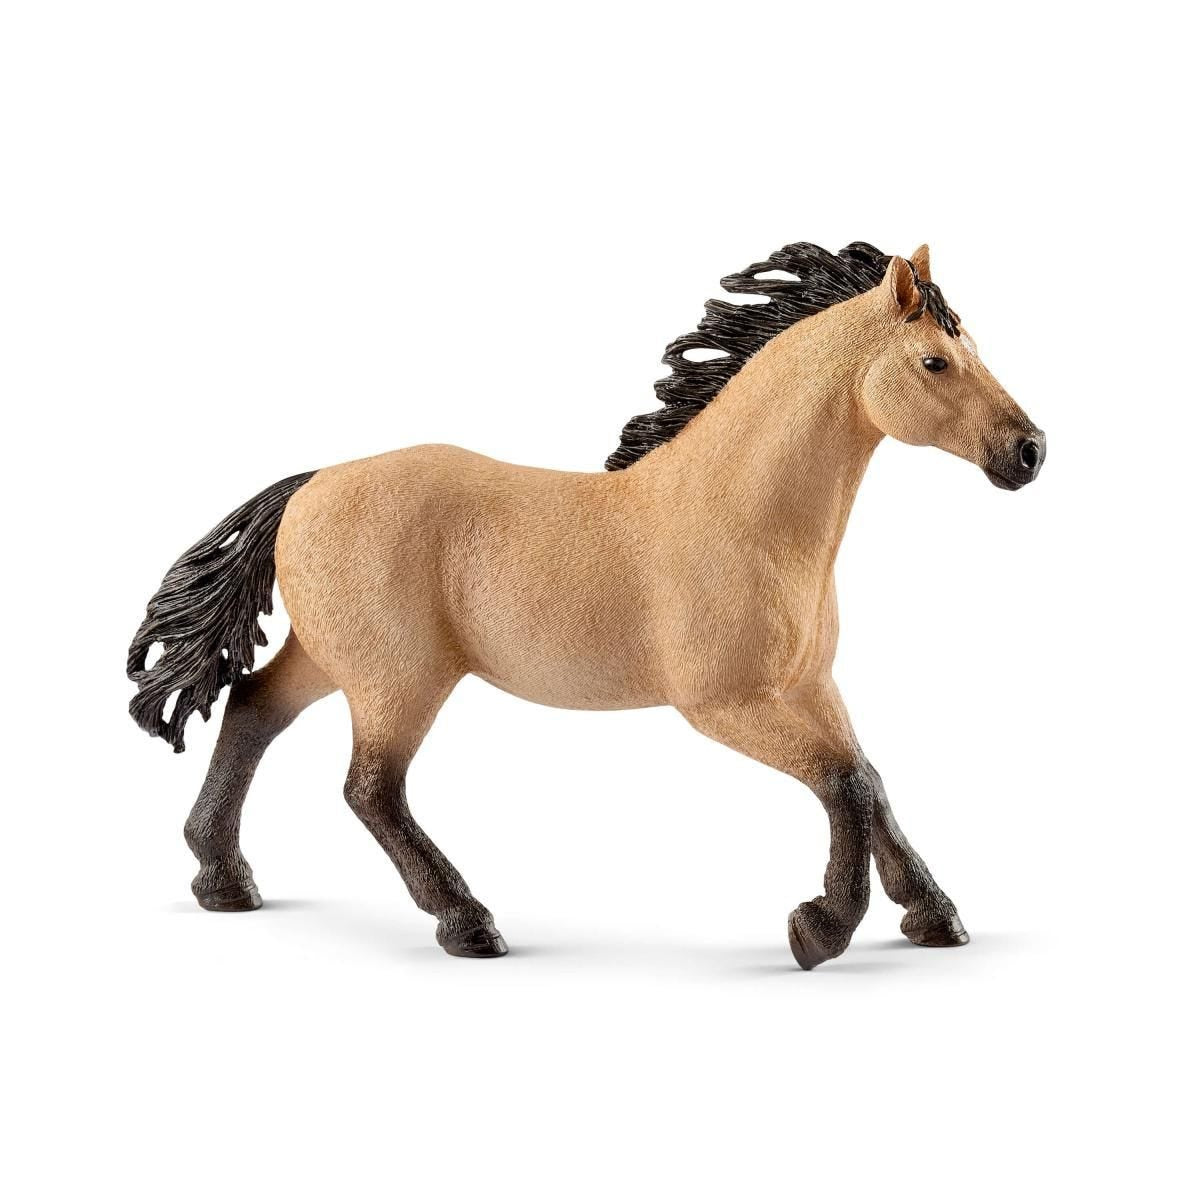 Schleich Quarter Horse Stallion 13853